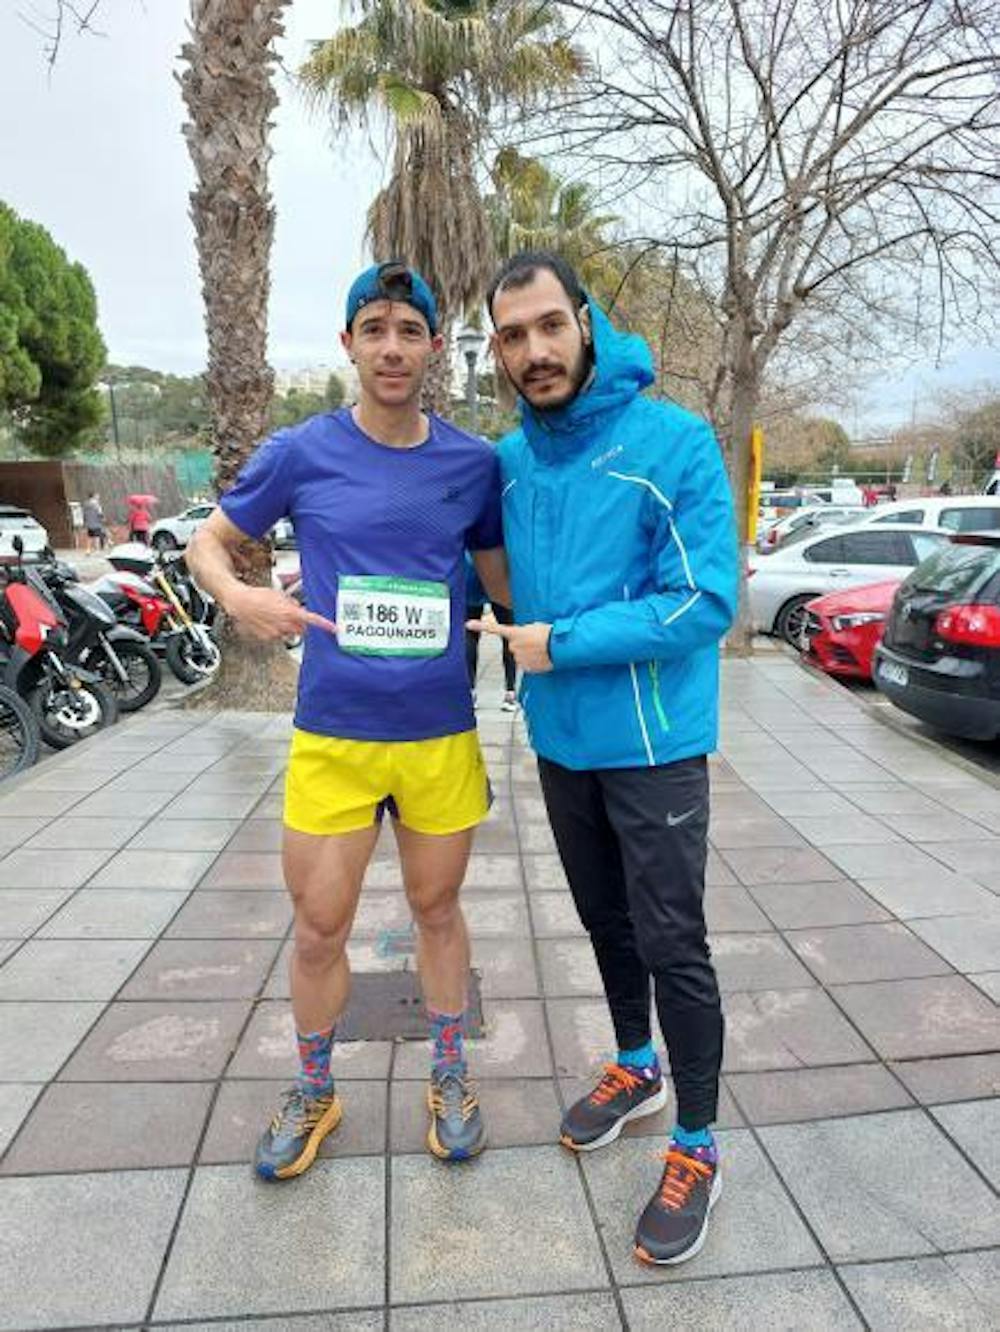 Θ. Παγουνάδης περιγράφει στο Runbeat την εμπειρία του στην Ταραγόνα μετά την δεύτερη θέση του στο Cala Romana Trail runbeat.gr 